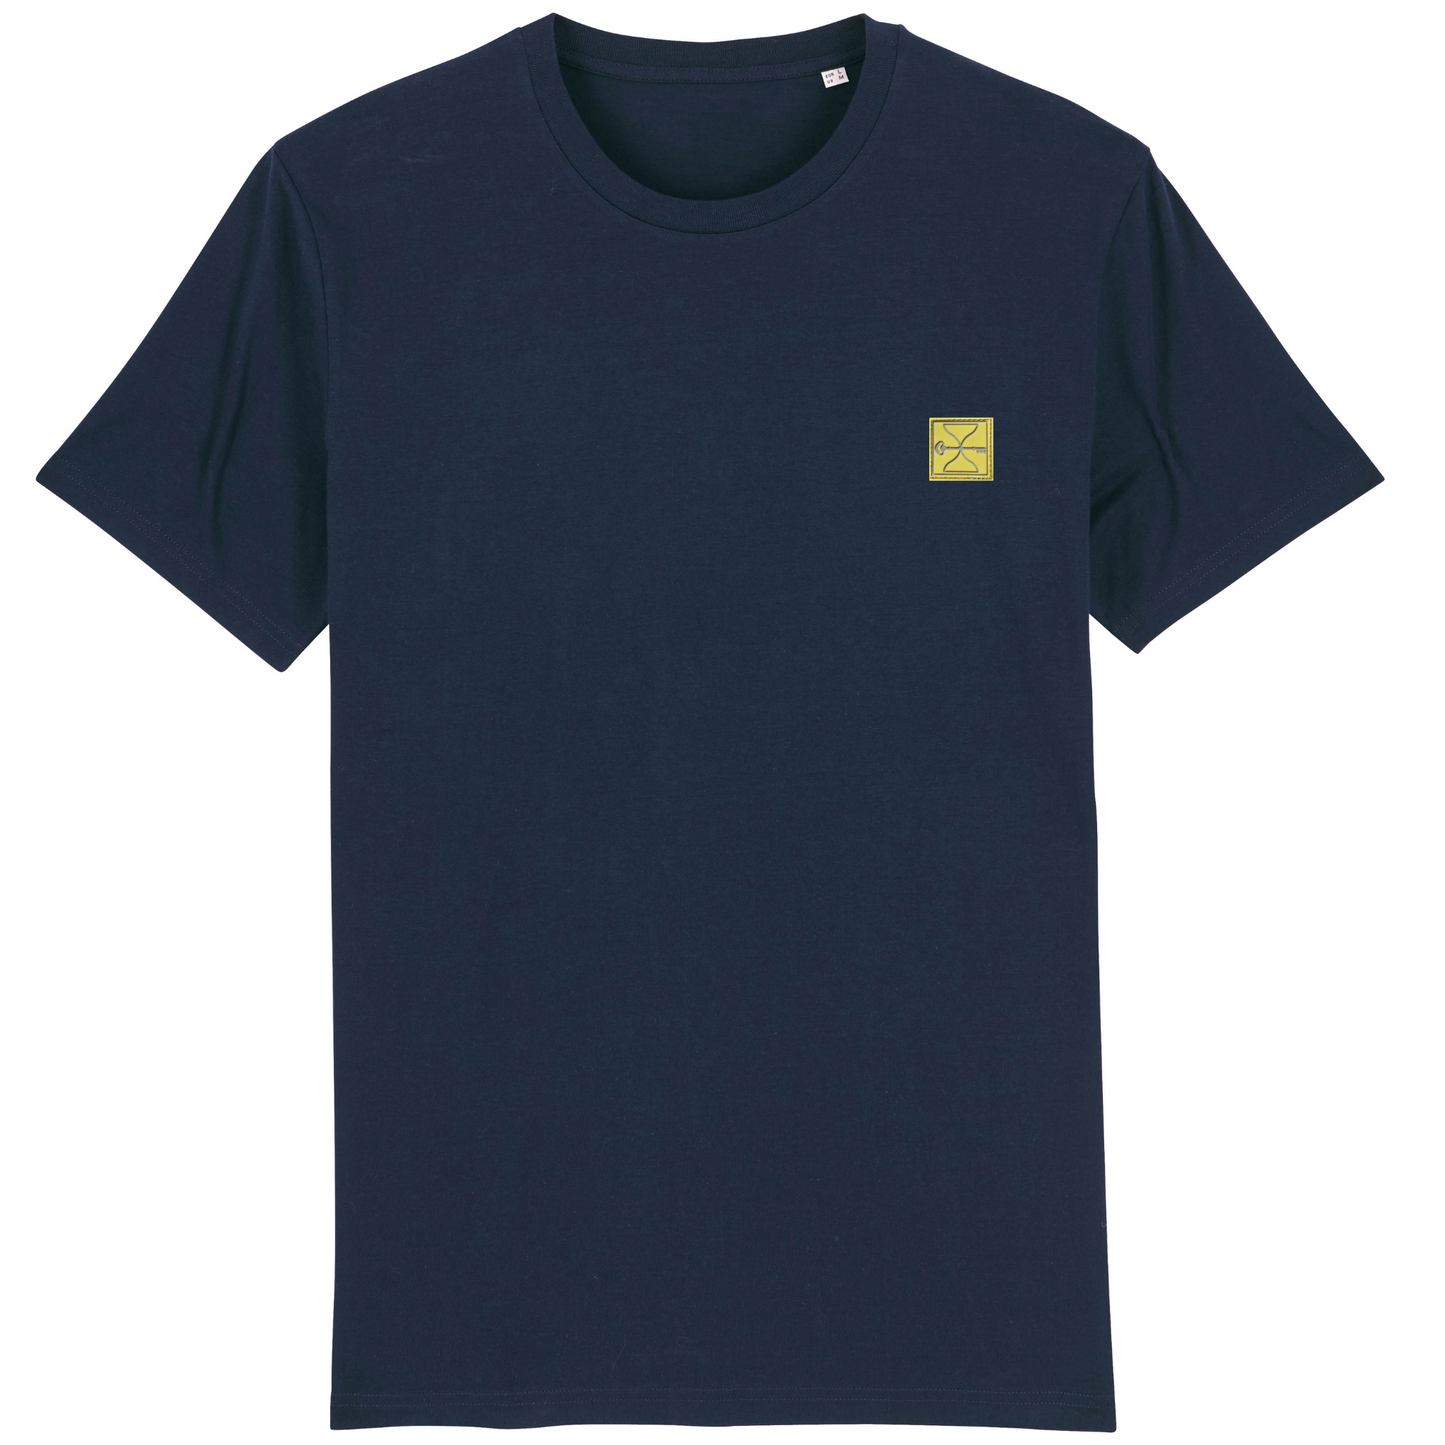 Navy Hourglass T-Shirt (Yellow Badge)